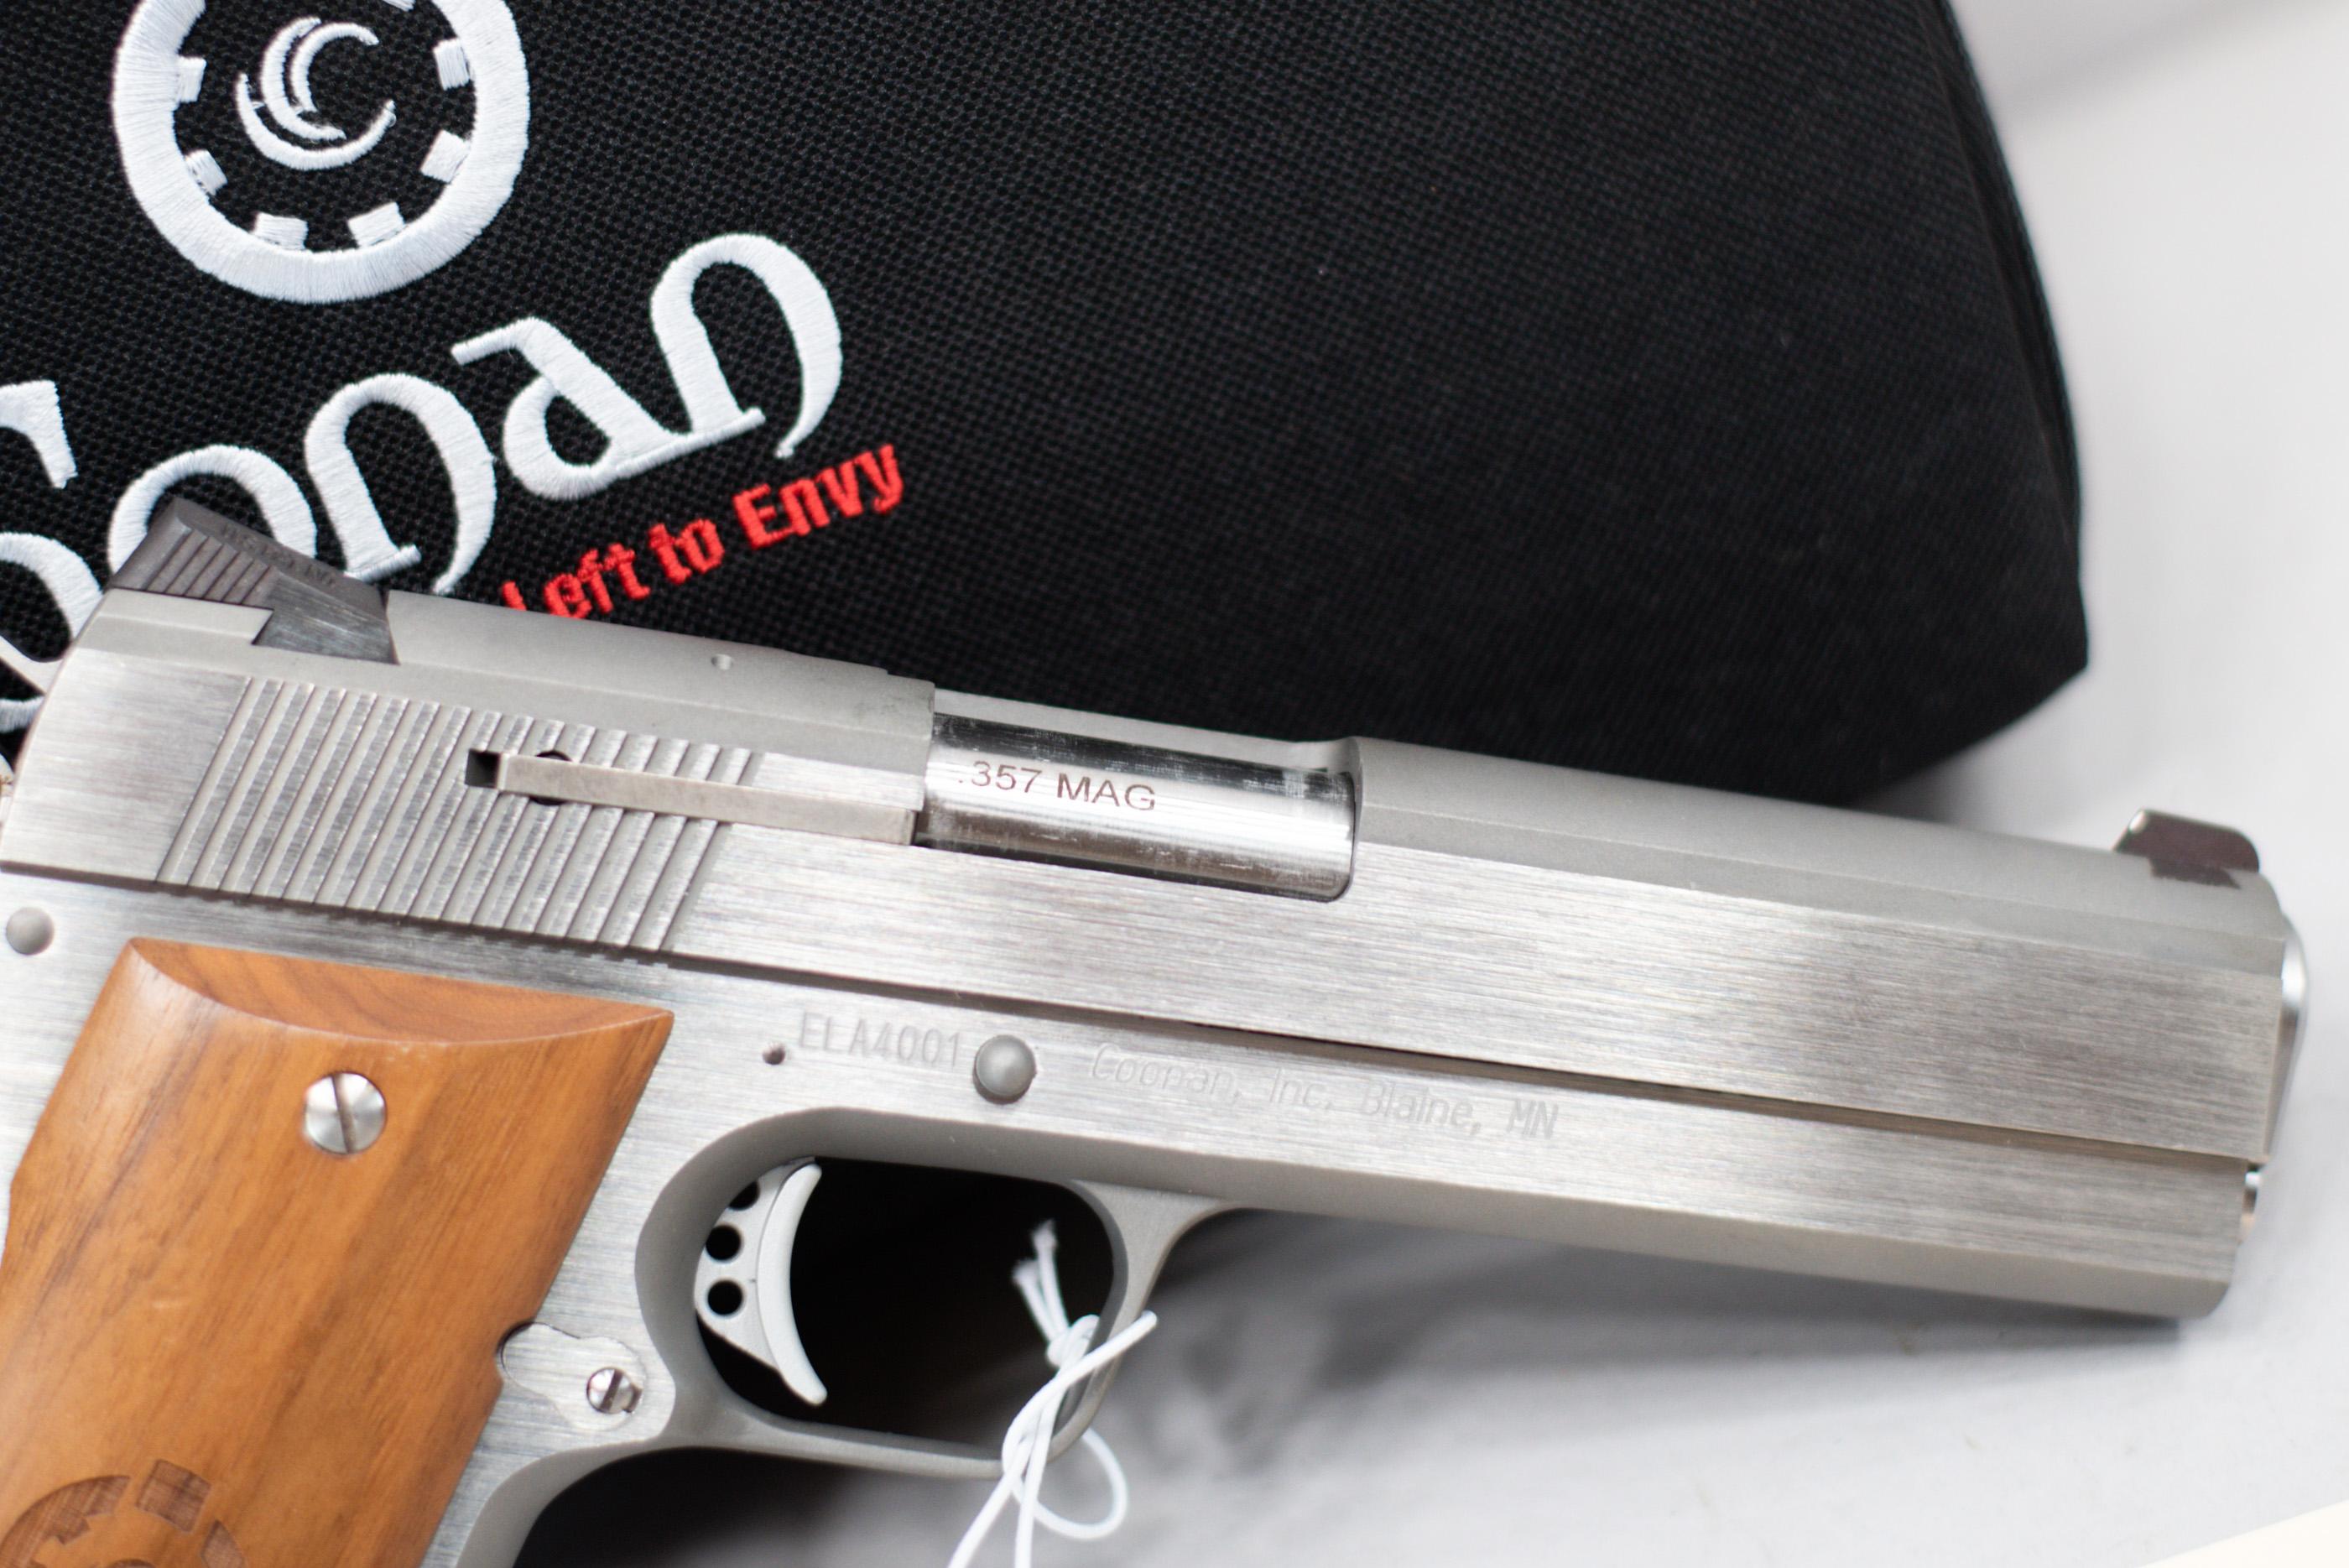 (R) Coonan Classic .357 Magnum Pistol